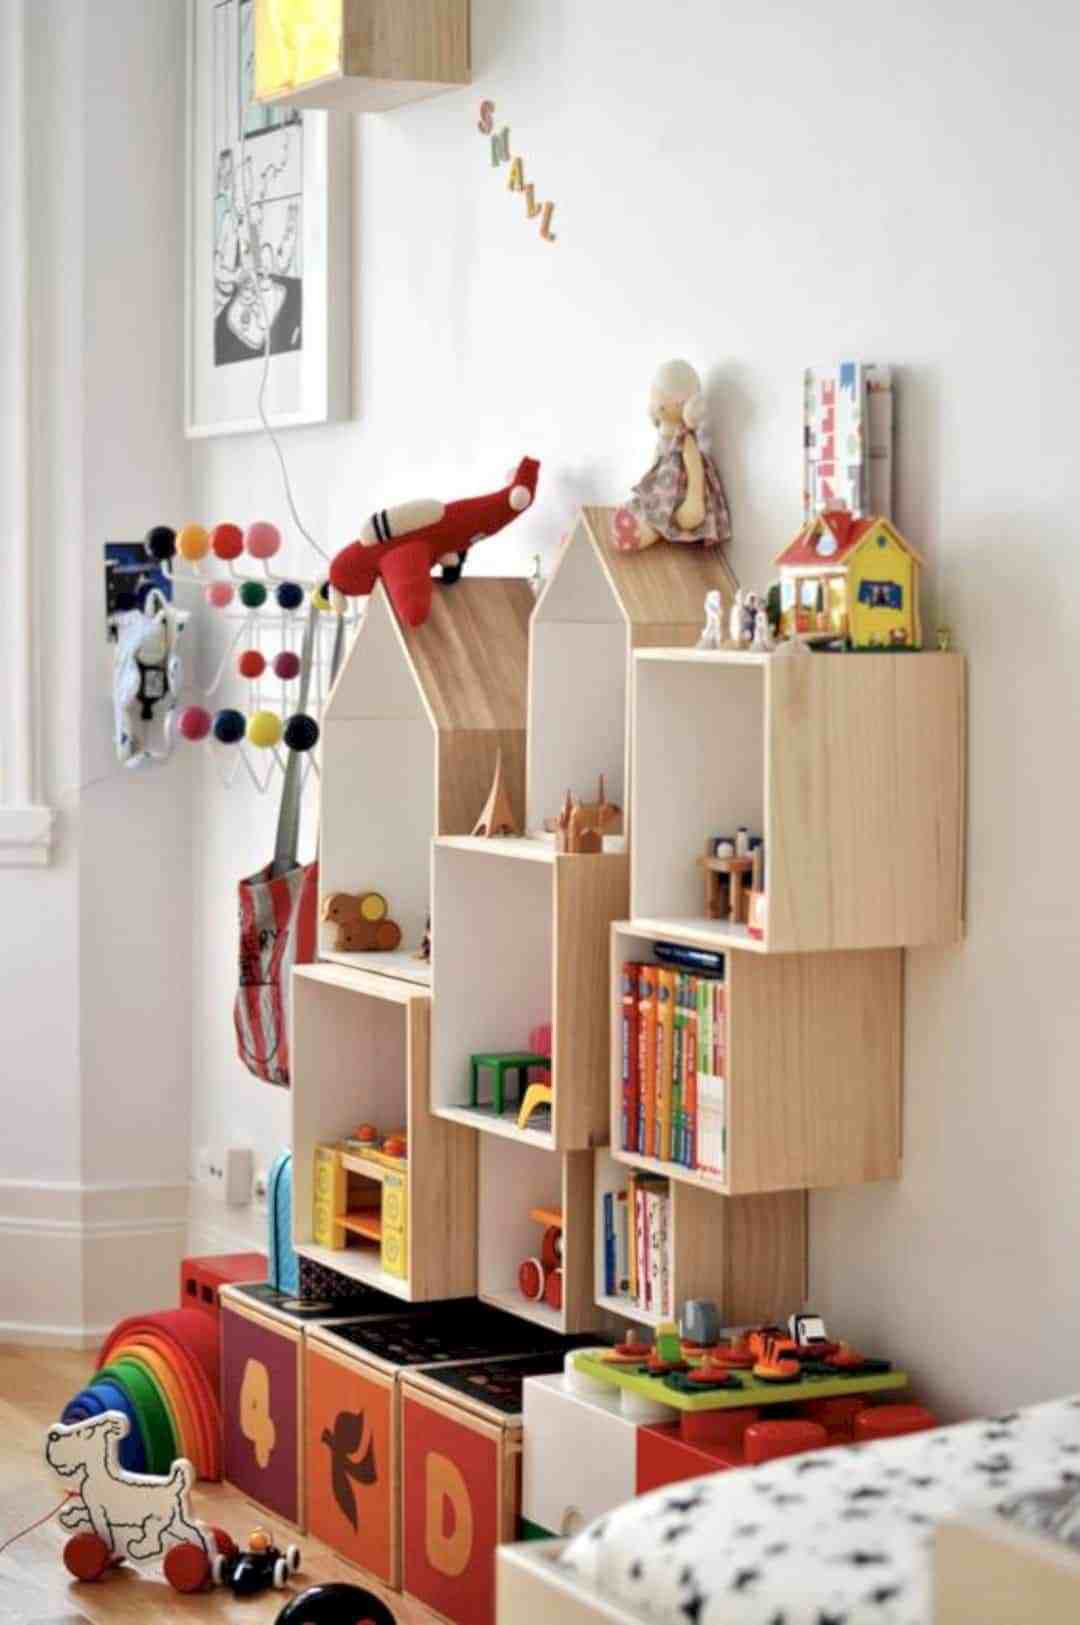 Best ideas about DIY Kid Storage
. Save or Pin 17 Brilliant DIY Kids Toy Storage Ideas Futurist Now.